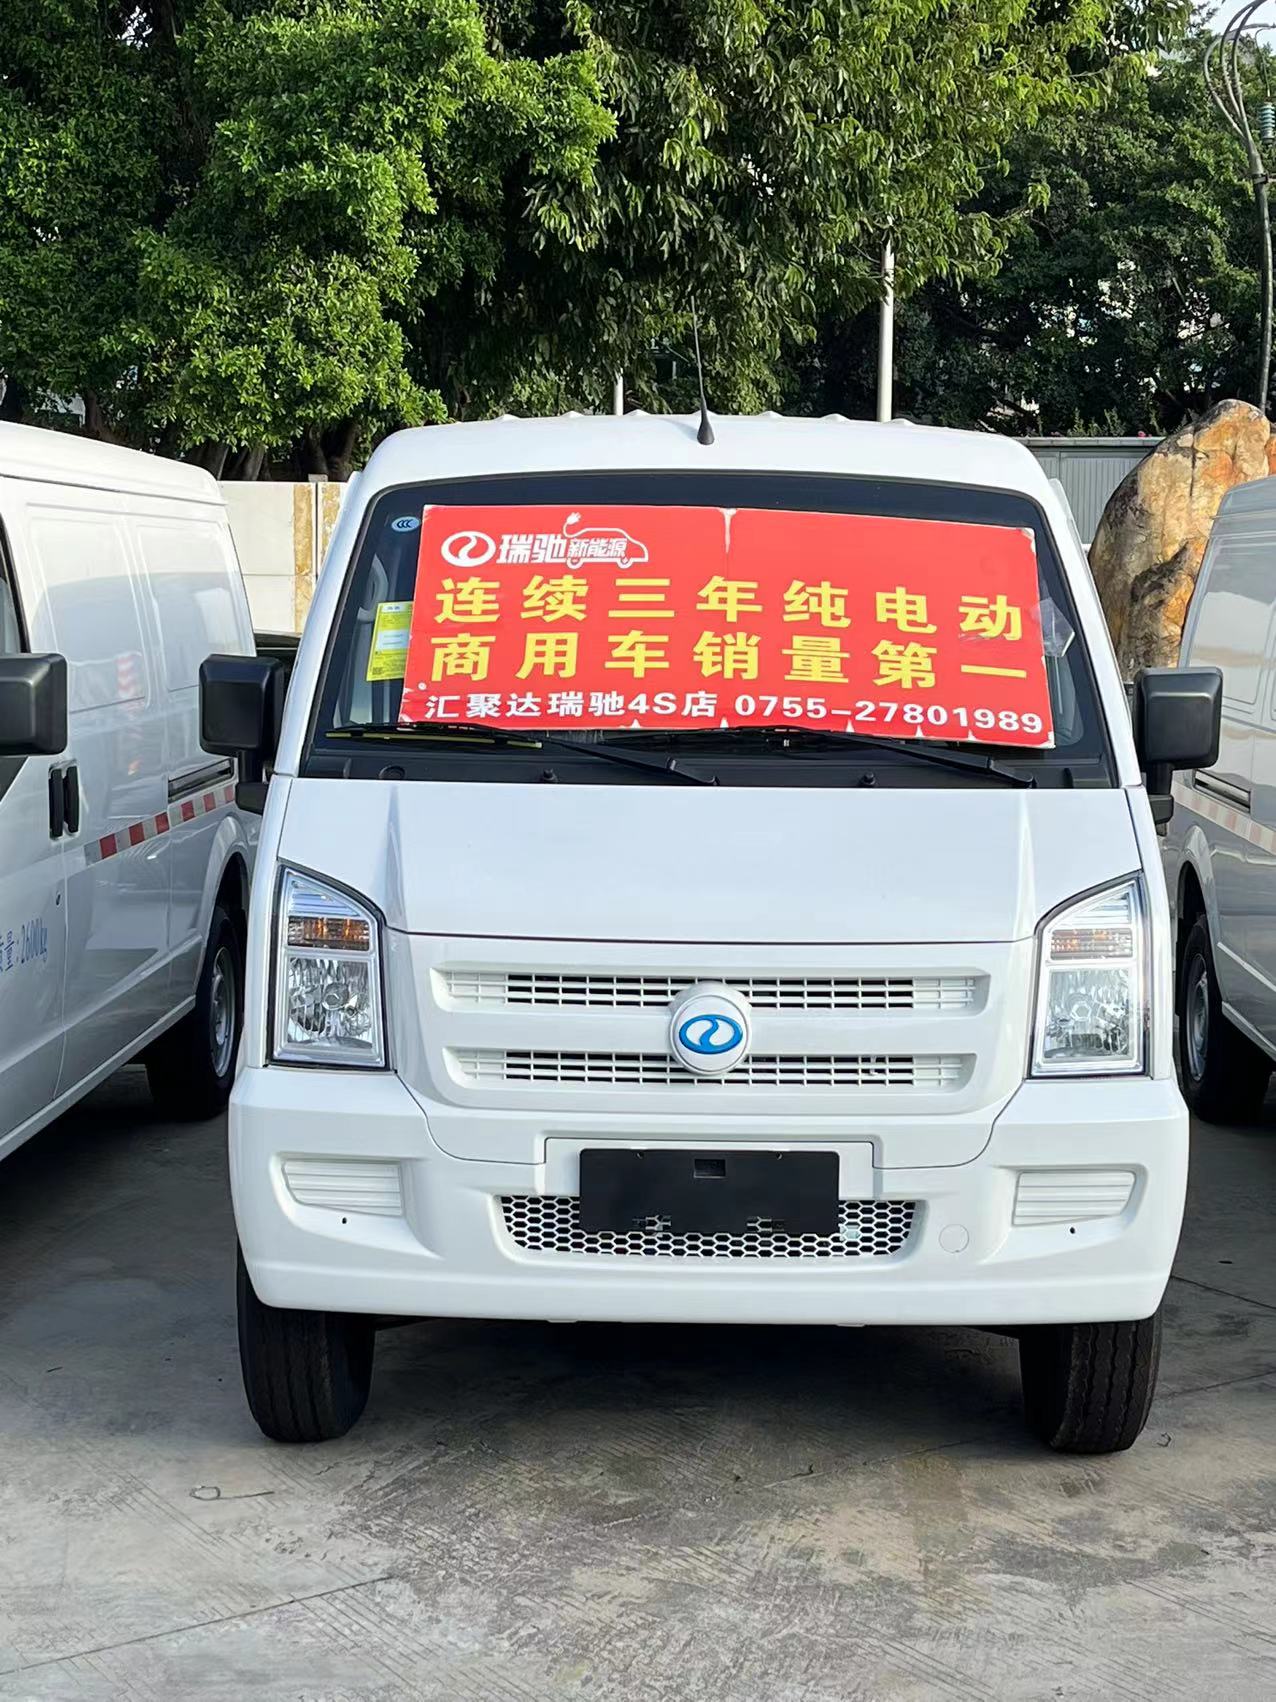 EC35电动封闭厢货深圳市火热促销中 让利高达4万